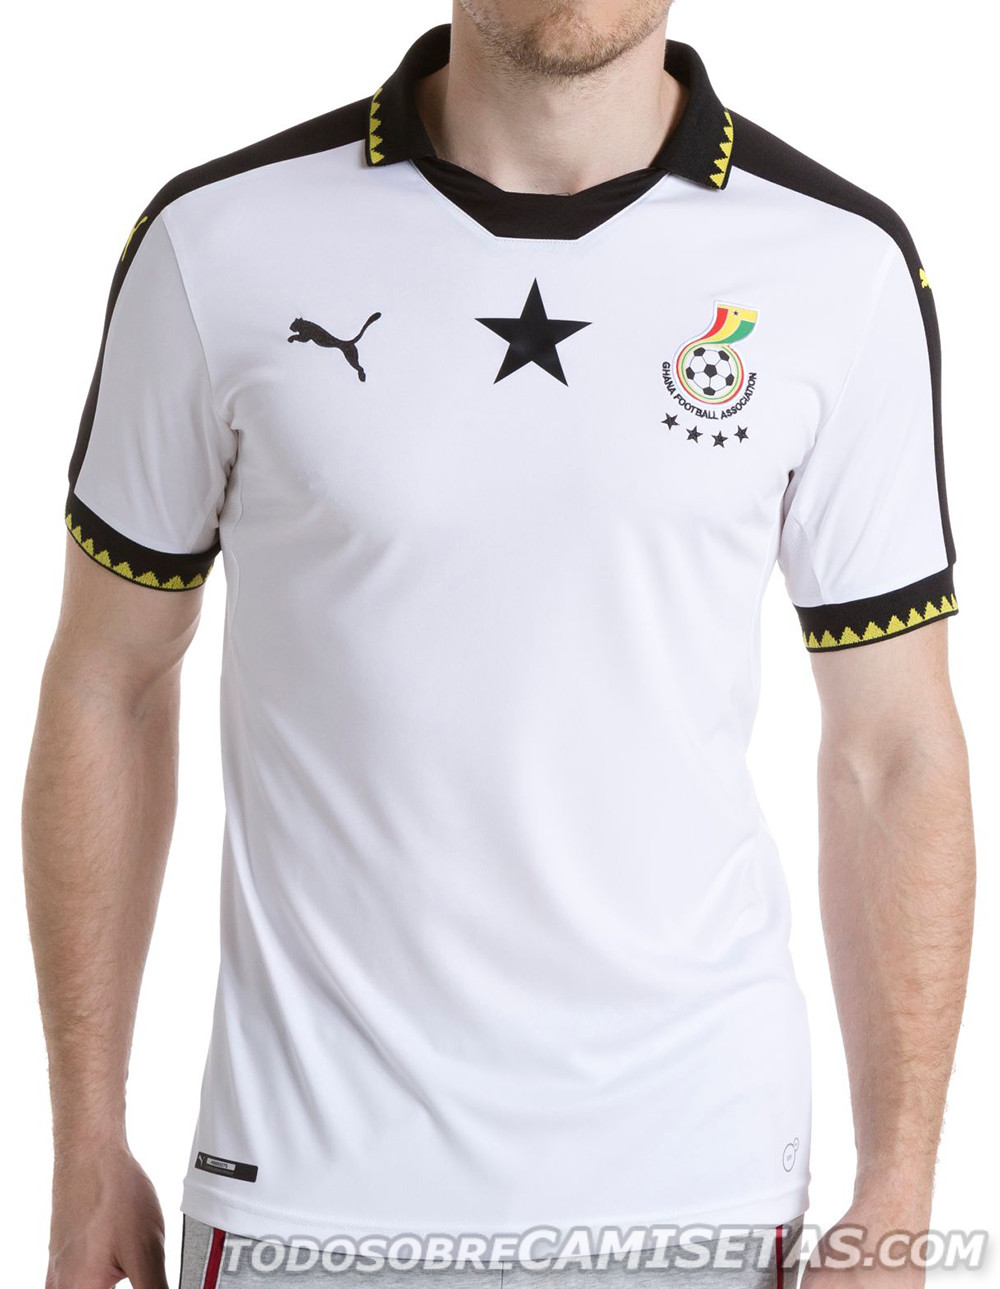 Cameroon, Ivory Coast and Ghana Puma 2016-17 kits